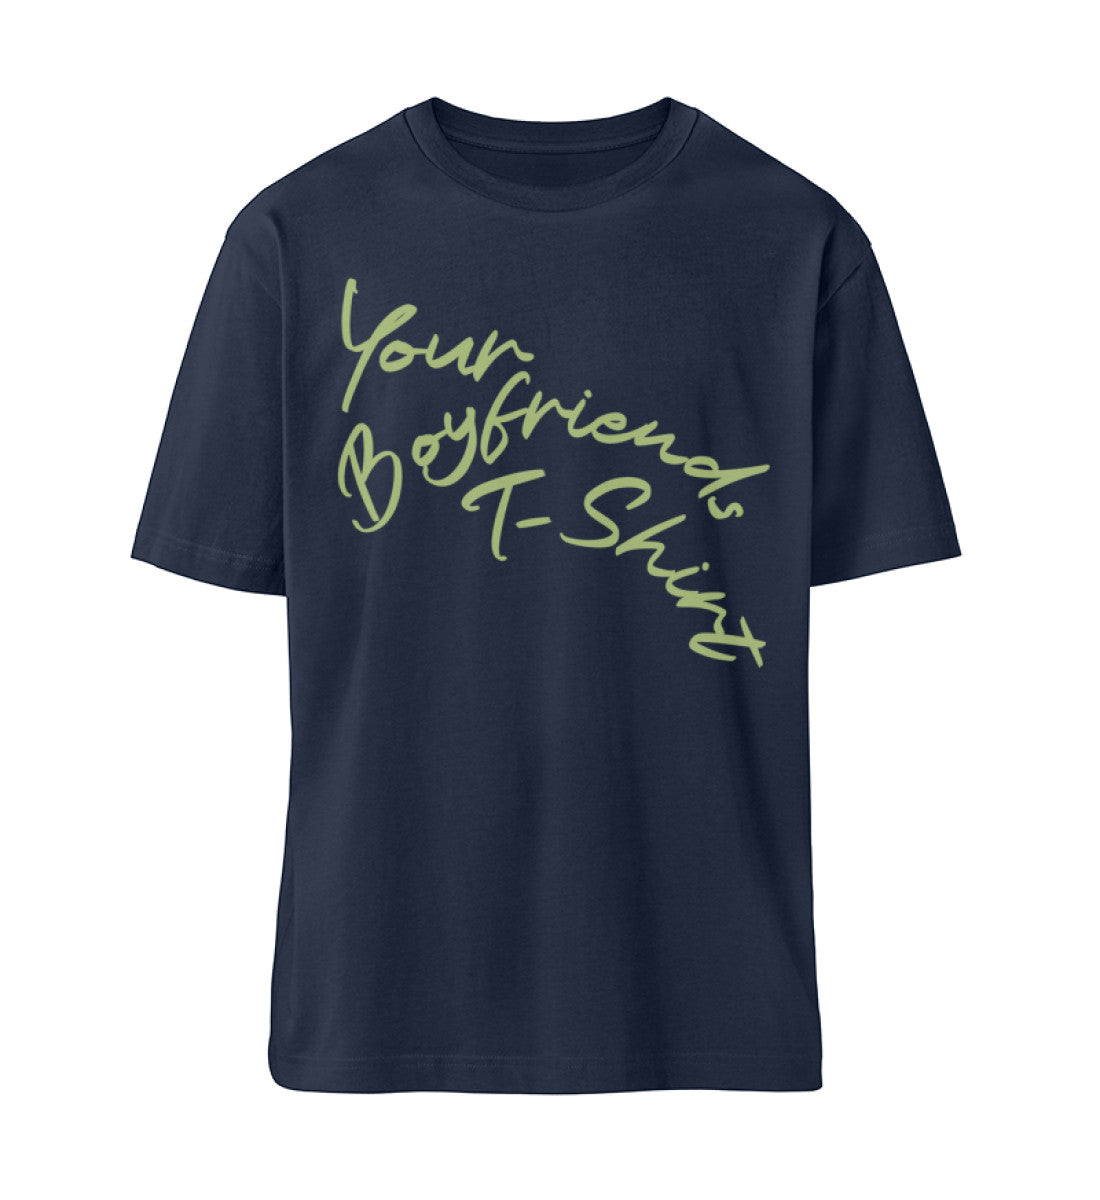 French Navy Blue T-Shirt Unisex für Damen und Herren in bedruckt mit dem Design der Roger Rockawoo Kollektion Your Boyfriends T-Shirt